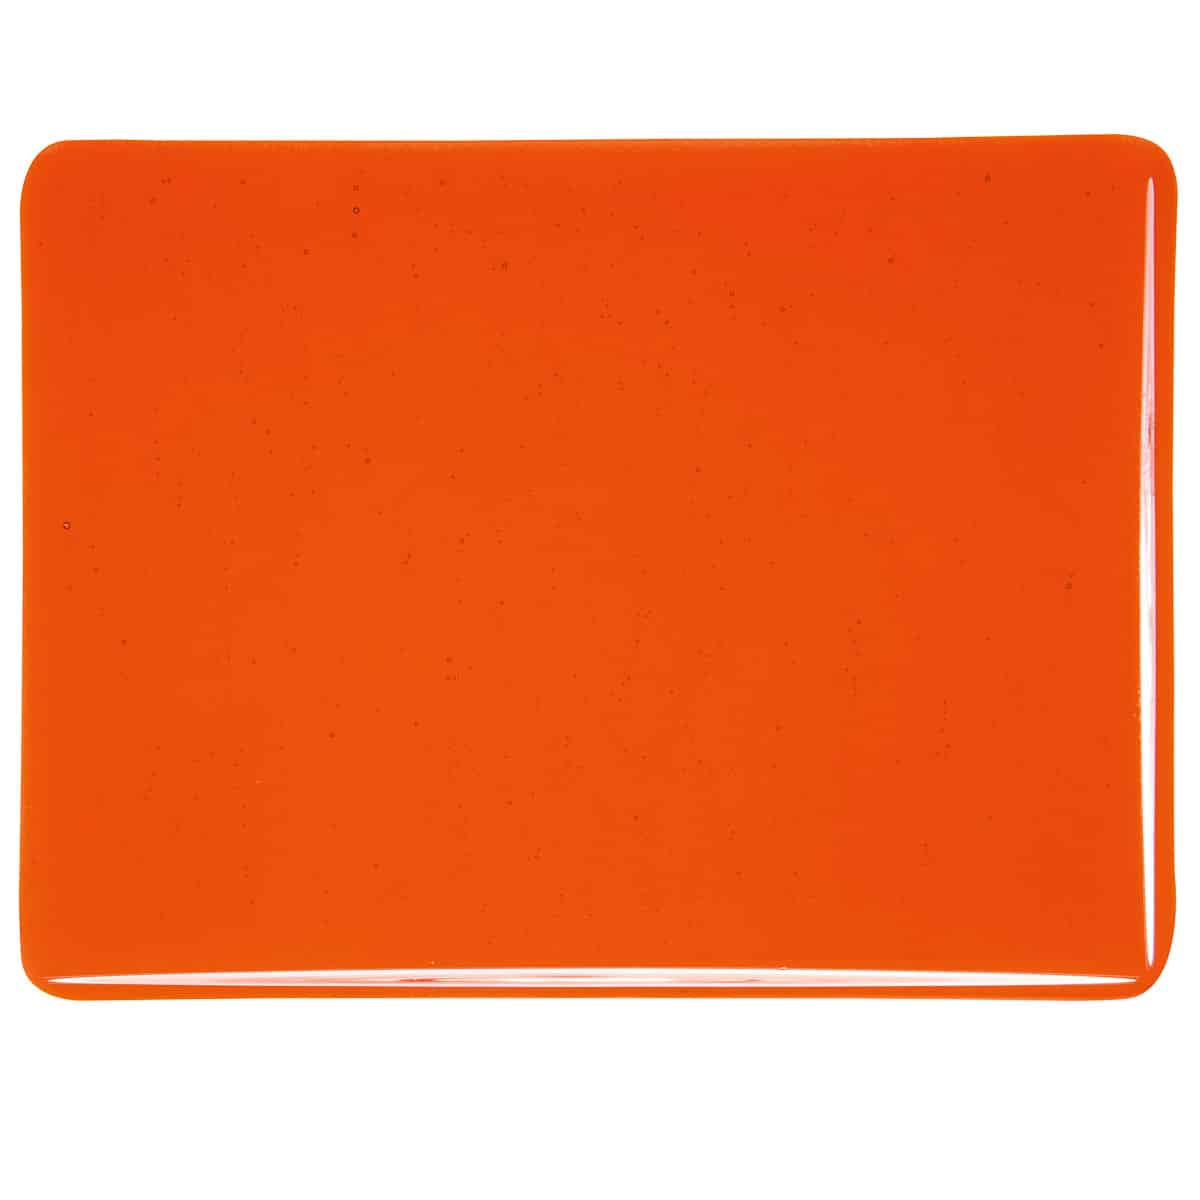 001125 Orange Transparent sheet glass tile